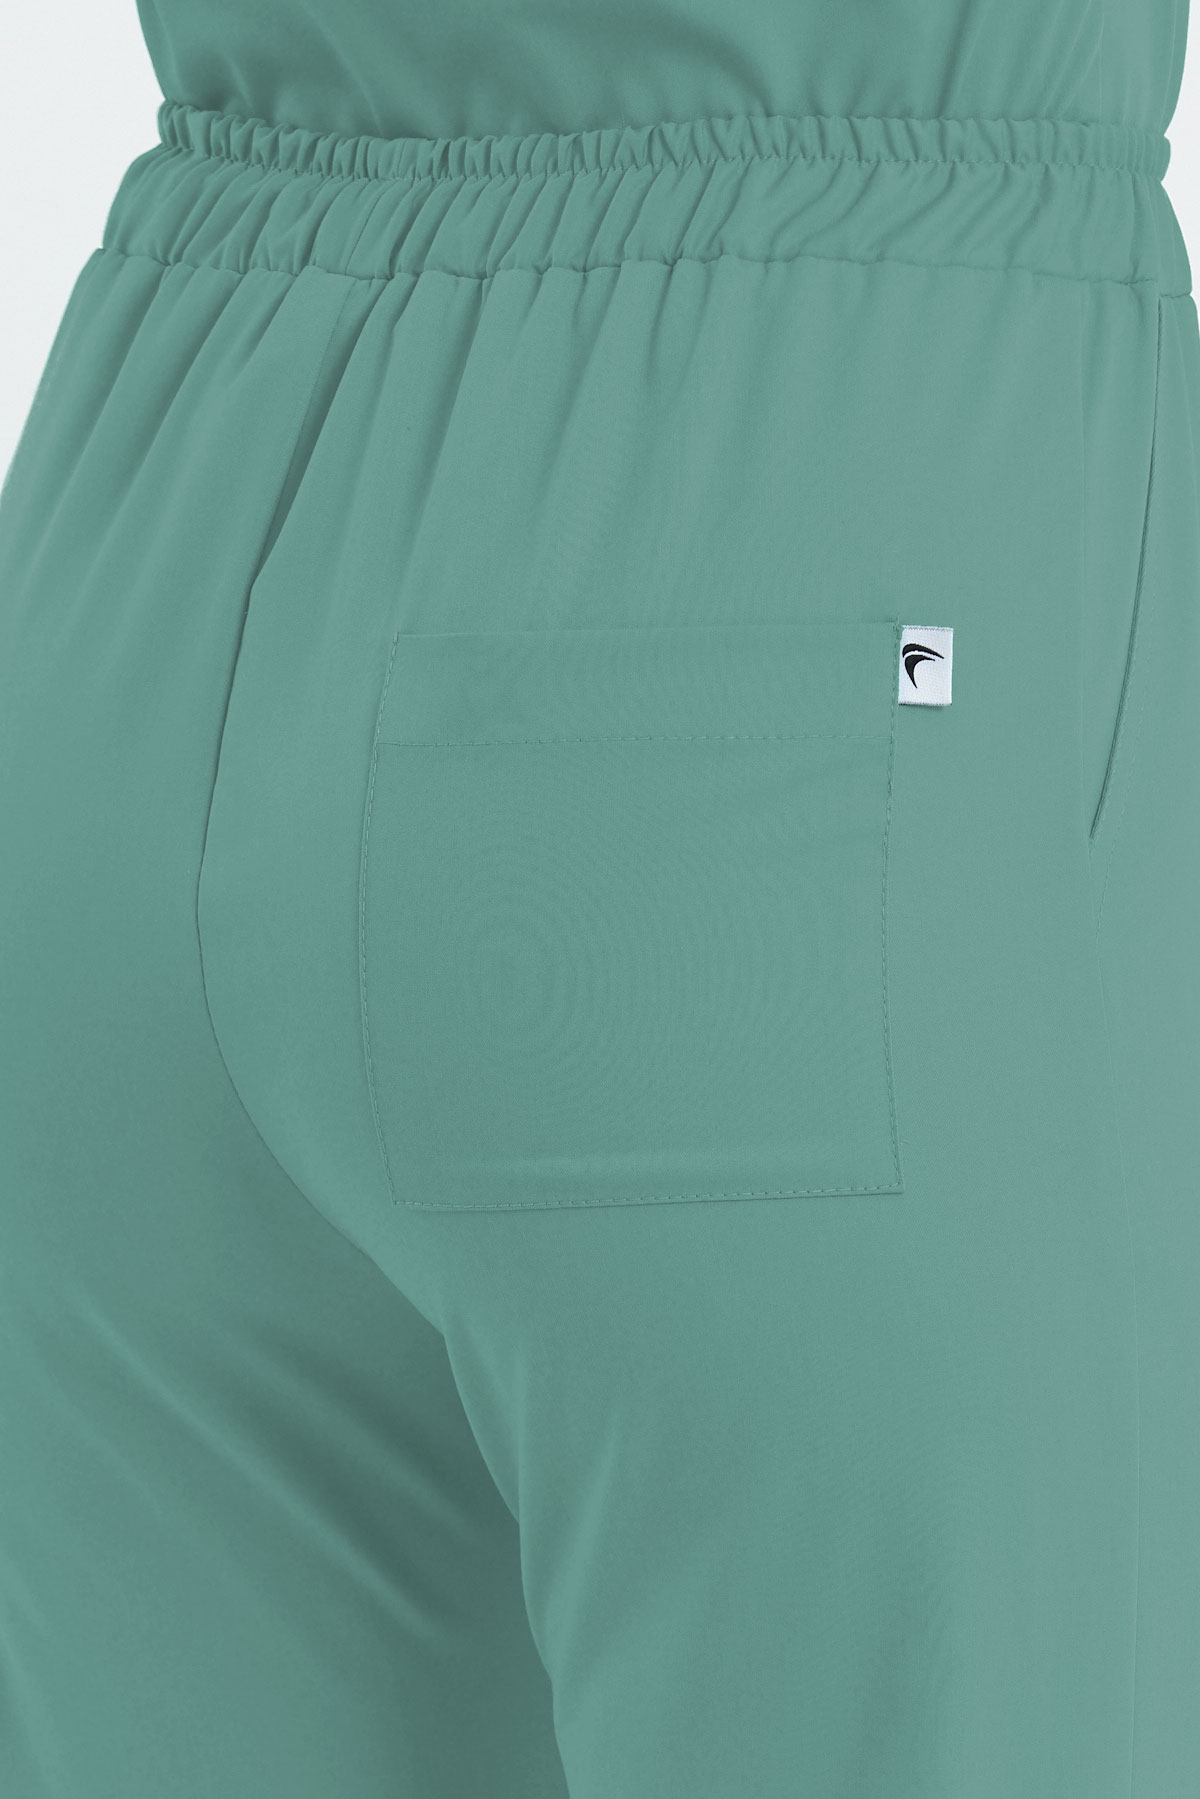 3005 Luxury Mint Yeşili Pantolon